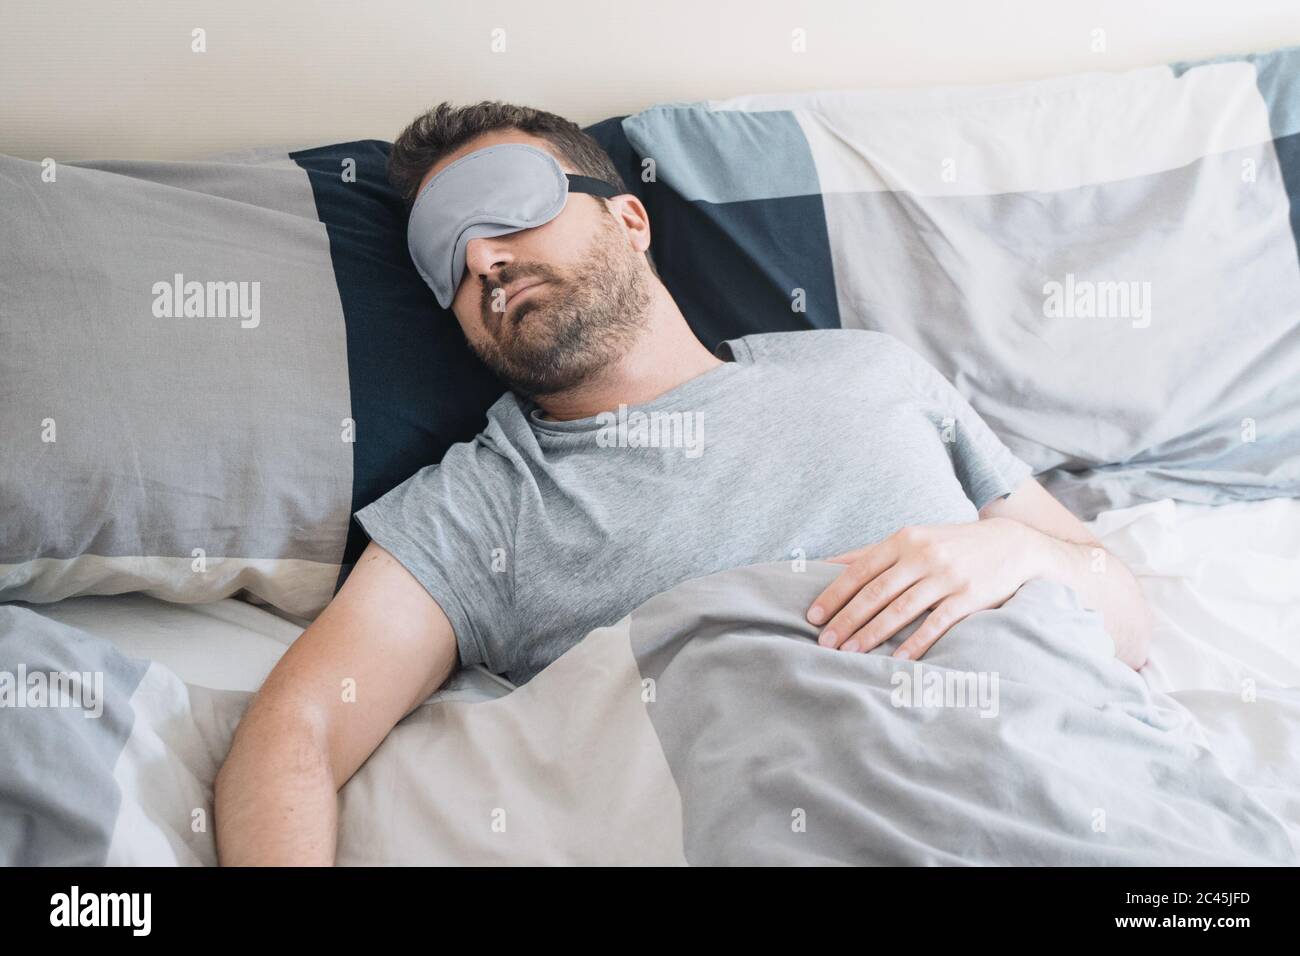 Hombre retrato en la cama con máscara para dormir sensación de comodidad Foto de stock